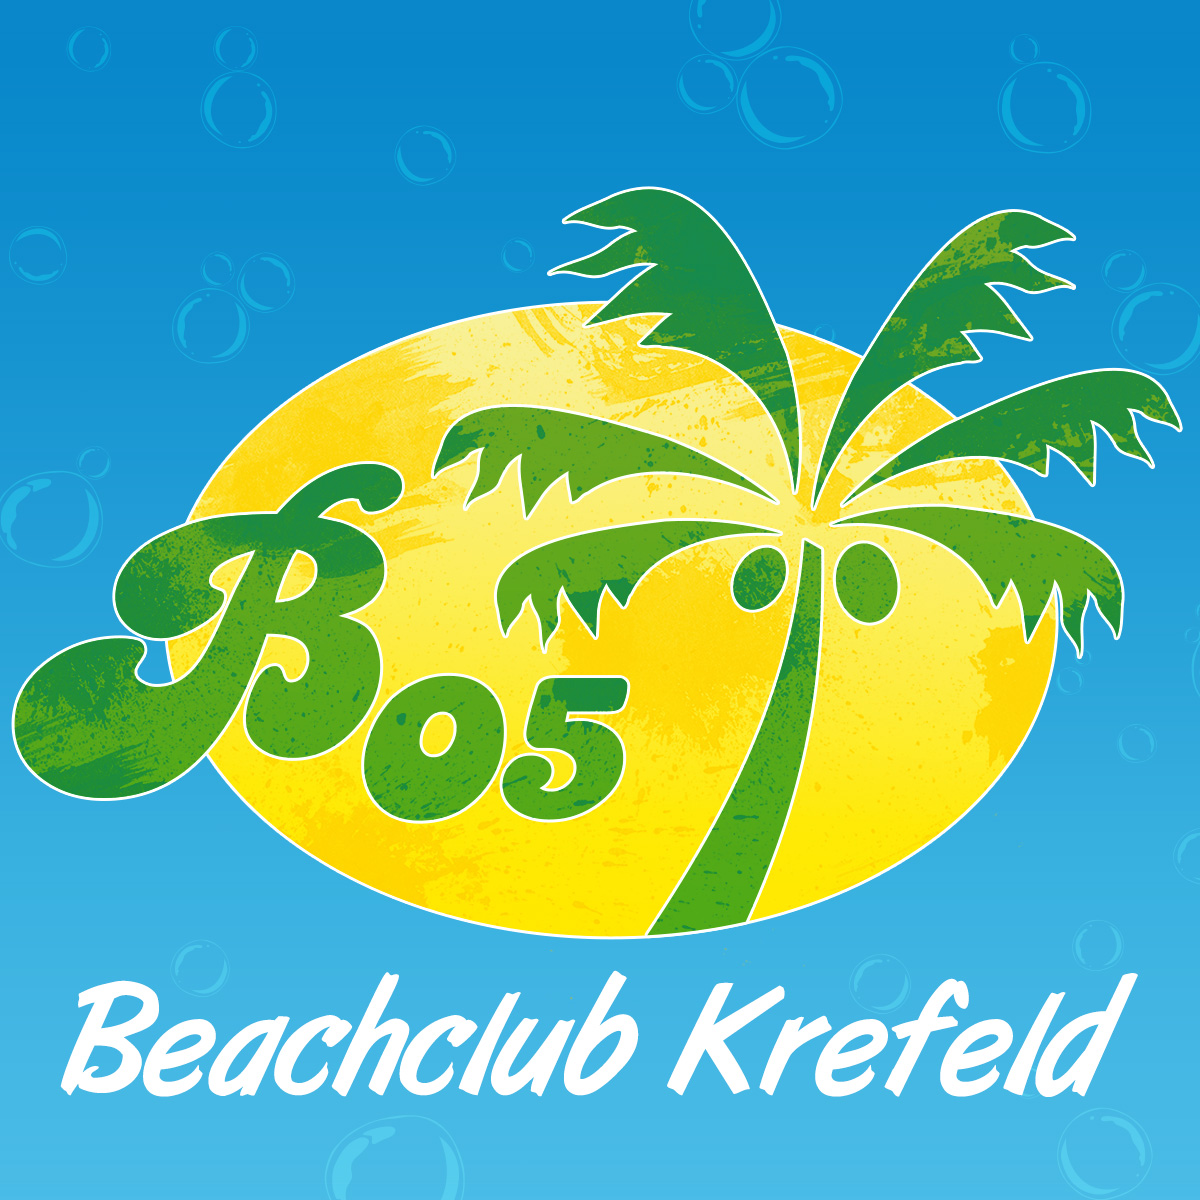 (c) Beachclub-krefeld.de